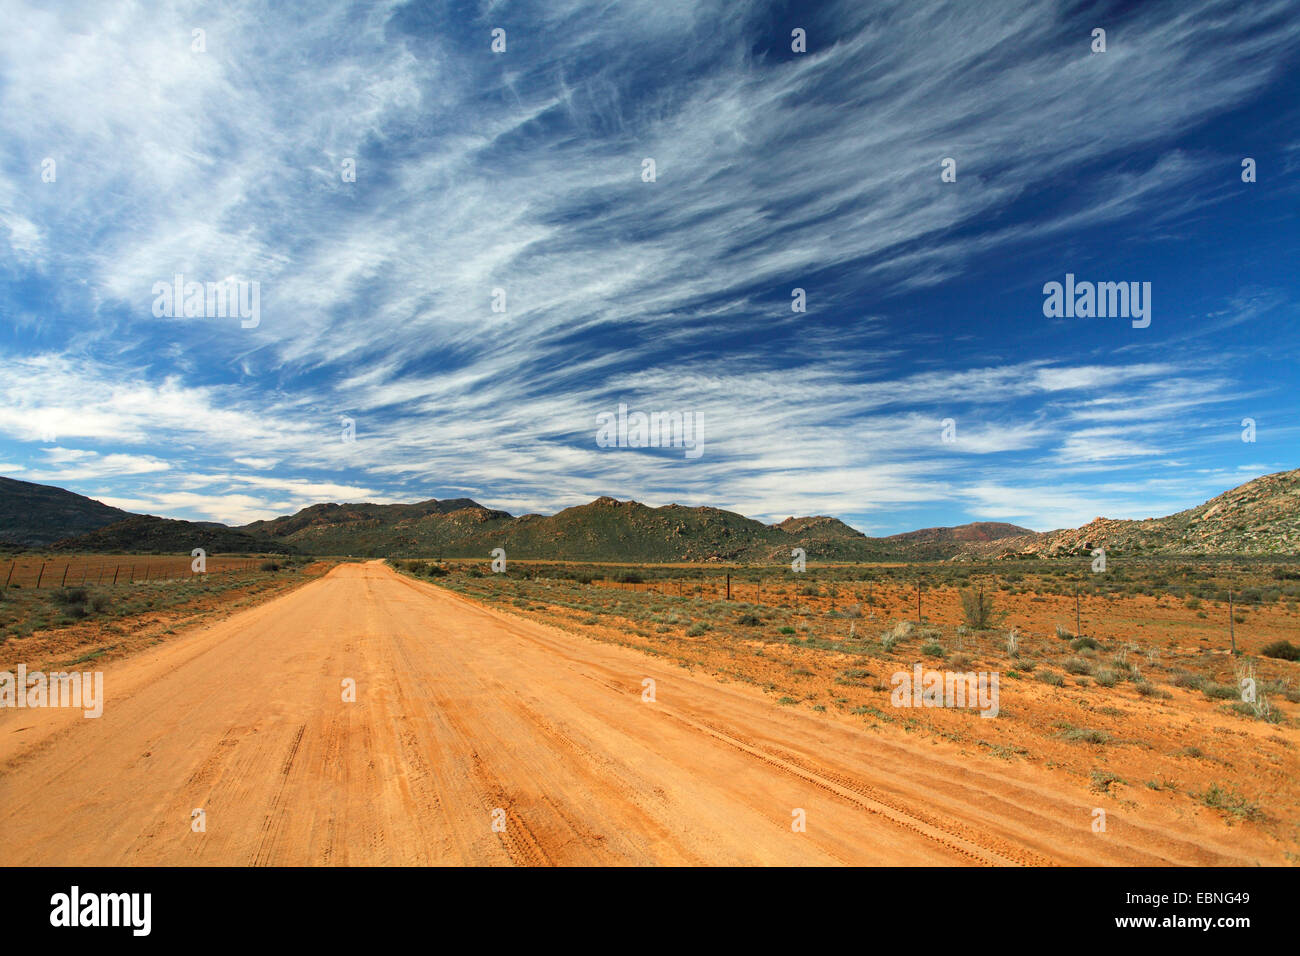 Route de terre dans la région montagneuse à l'est de Kamieskroon, Afrique du Sud, Northern Cape Banque D'Images